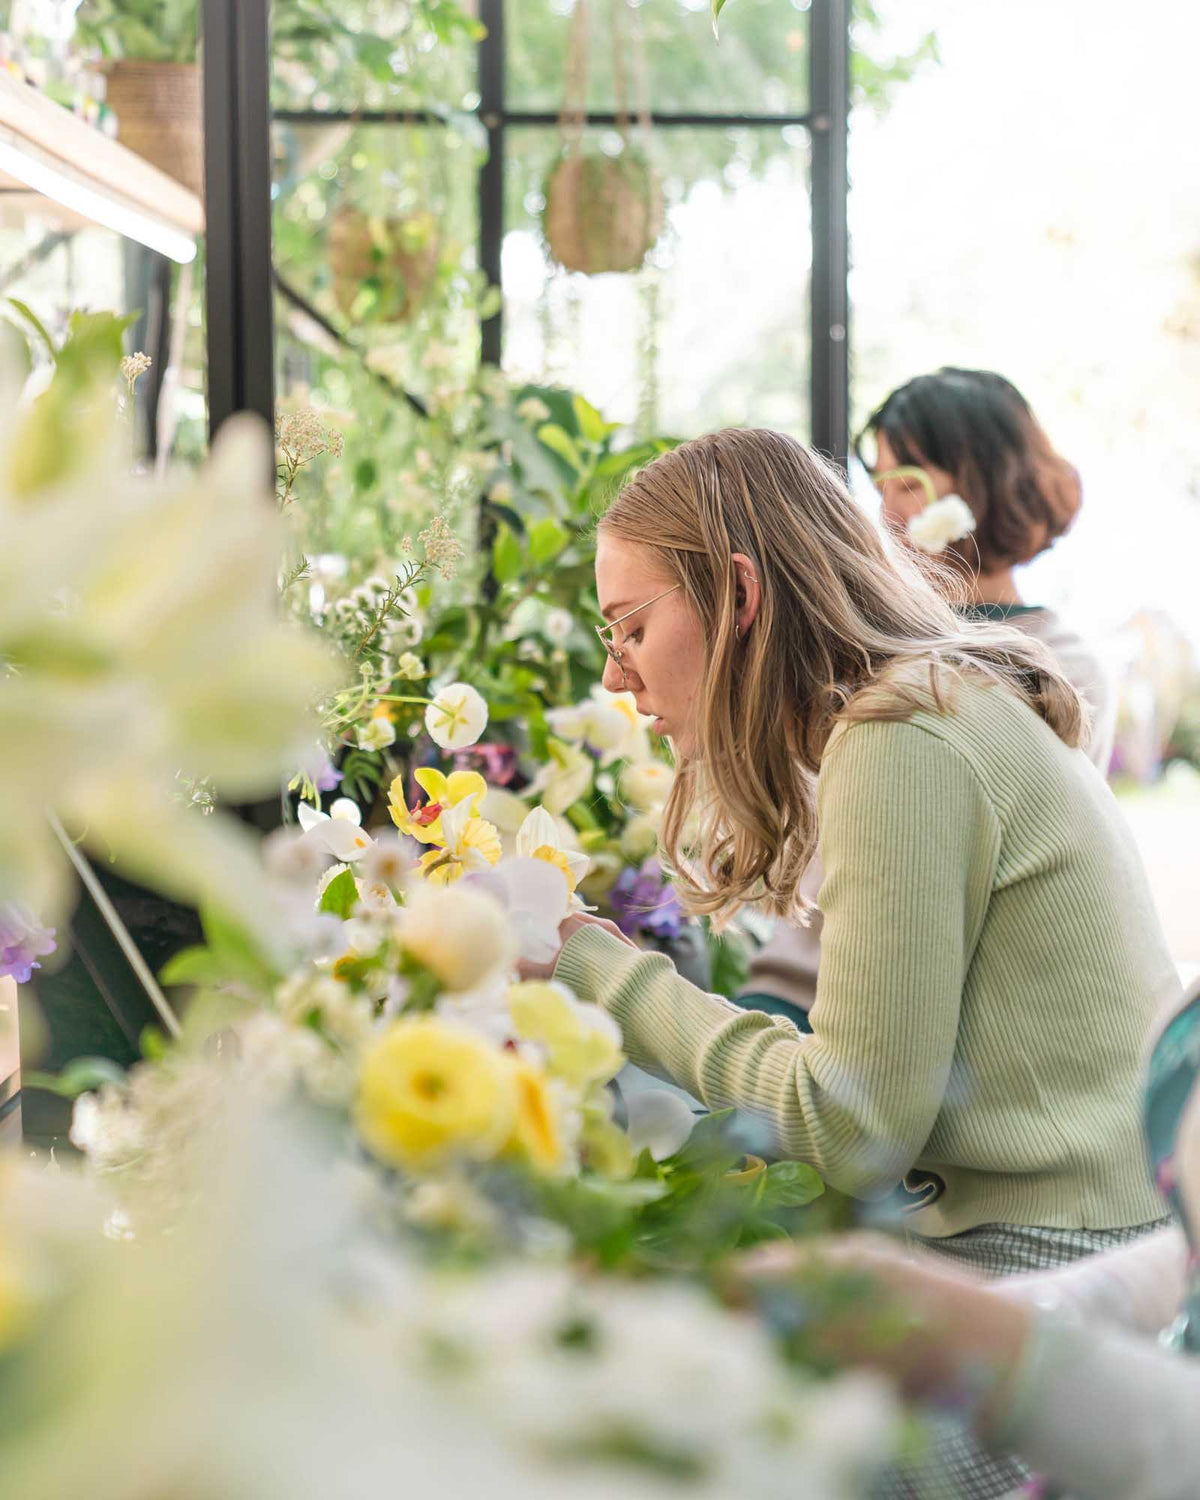 Flower Centrepiece Workshop